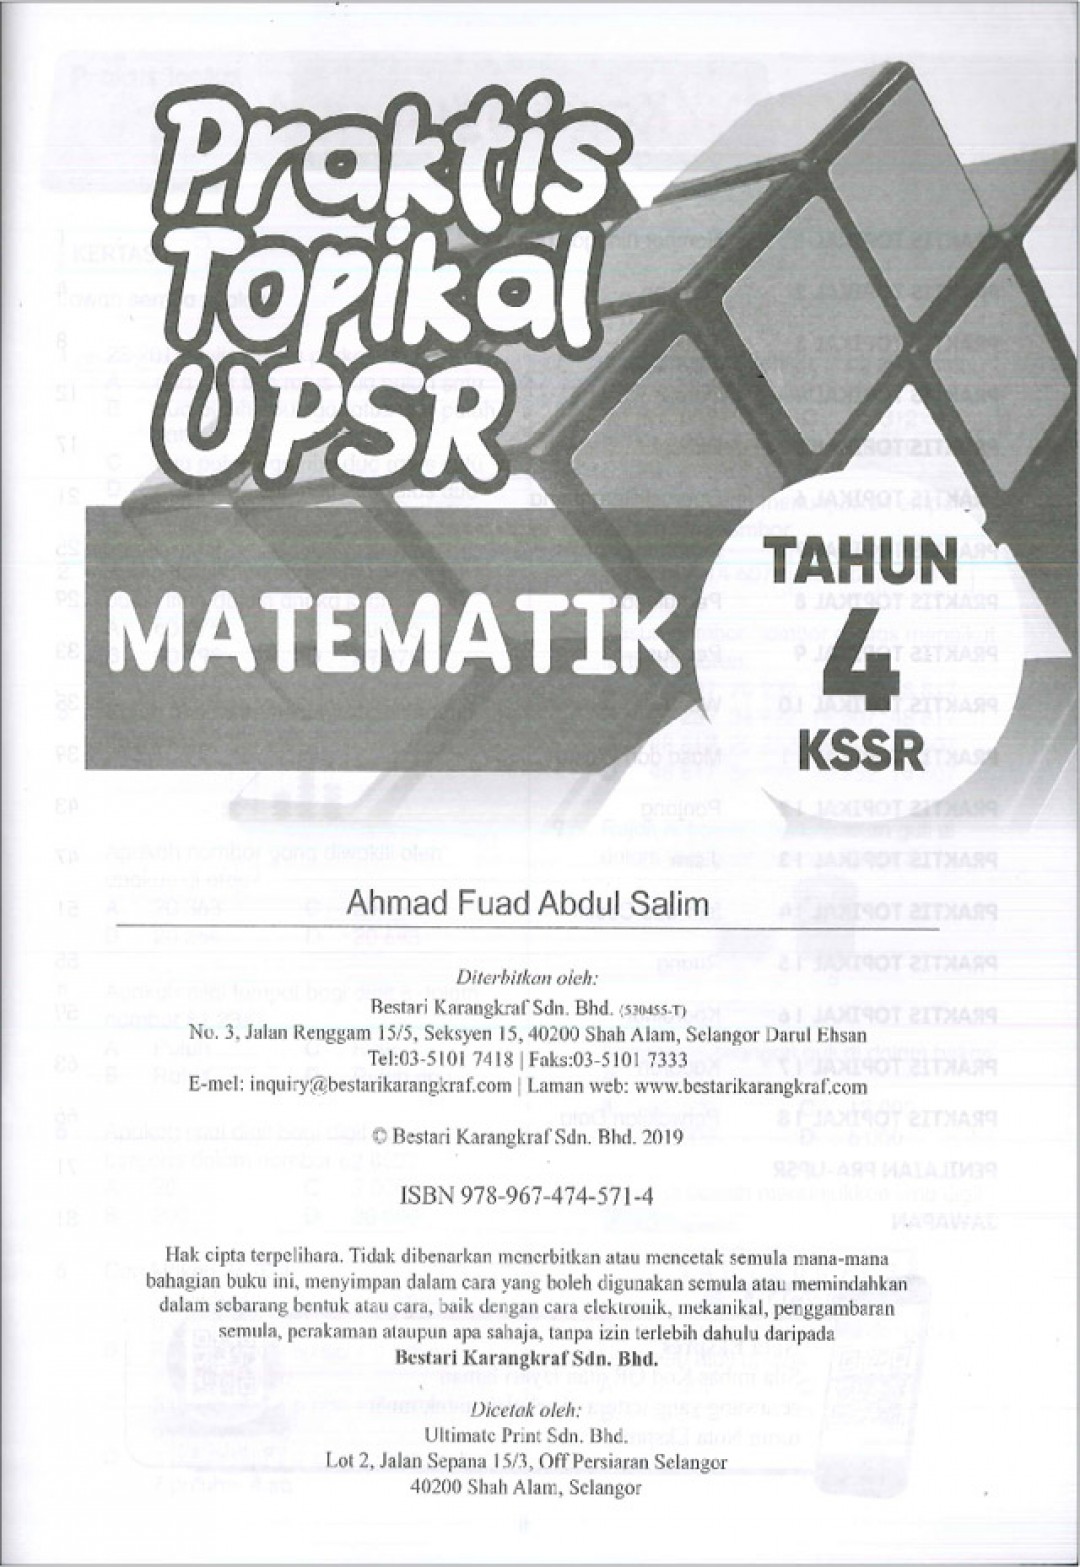 Praktis Topikal UPSR (2019) Matematik Tahun 4